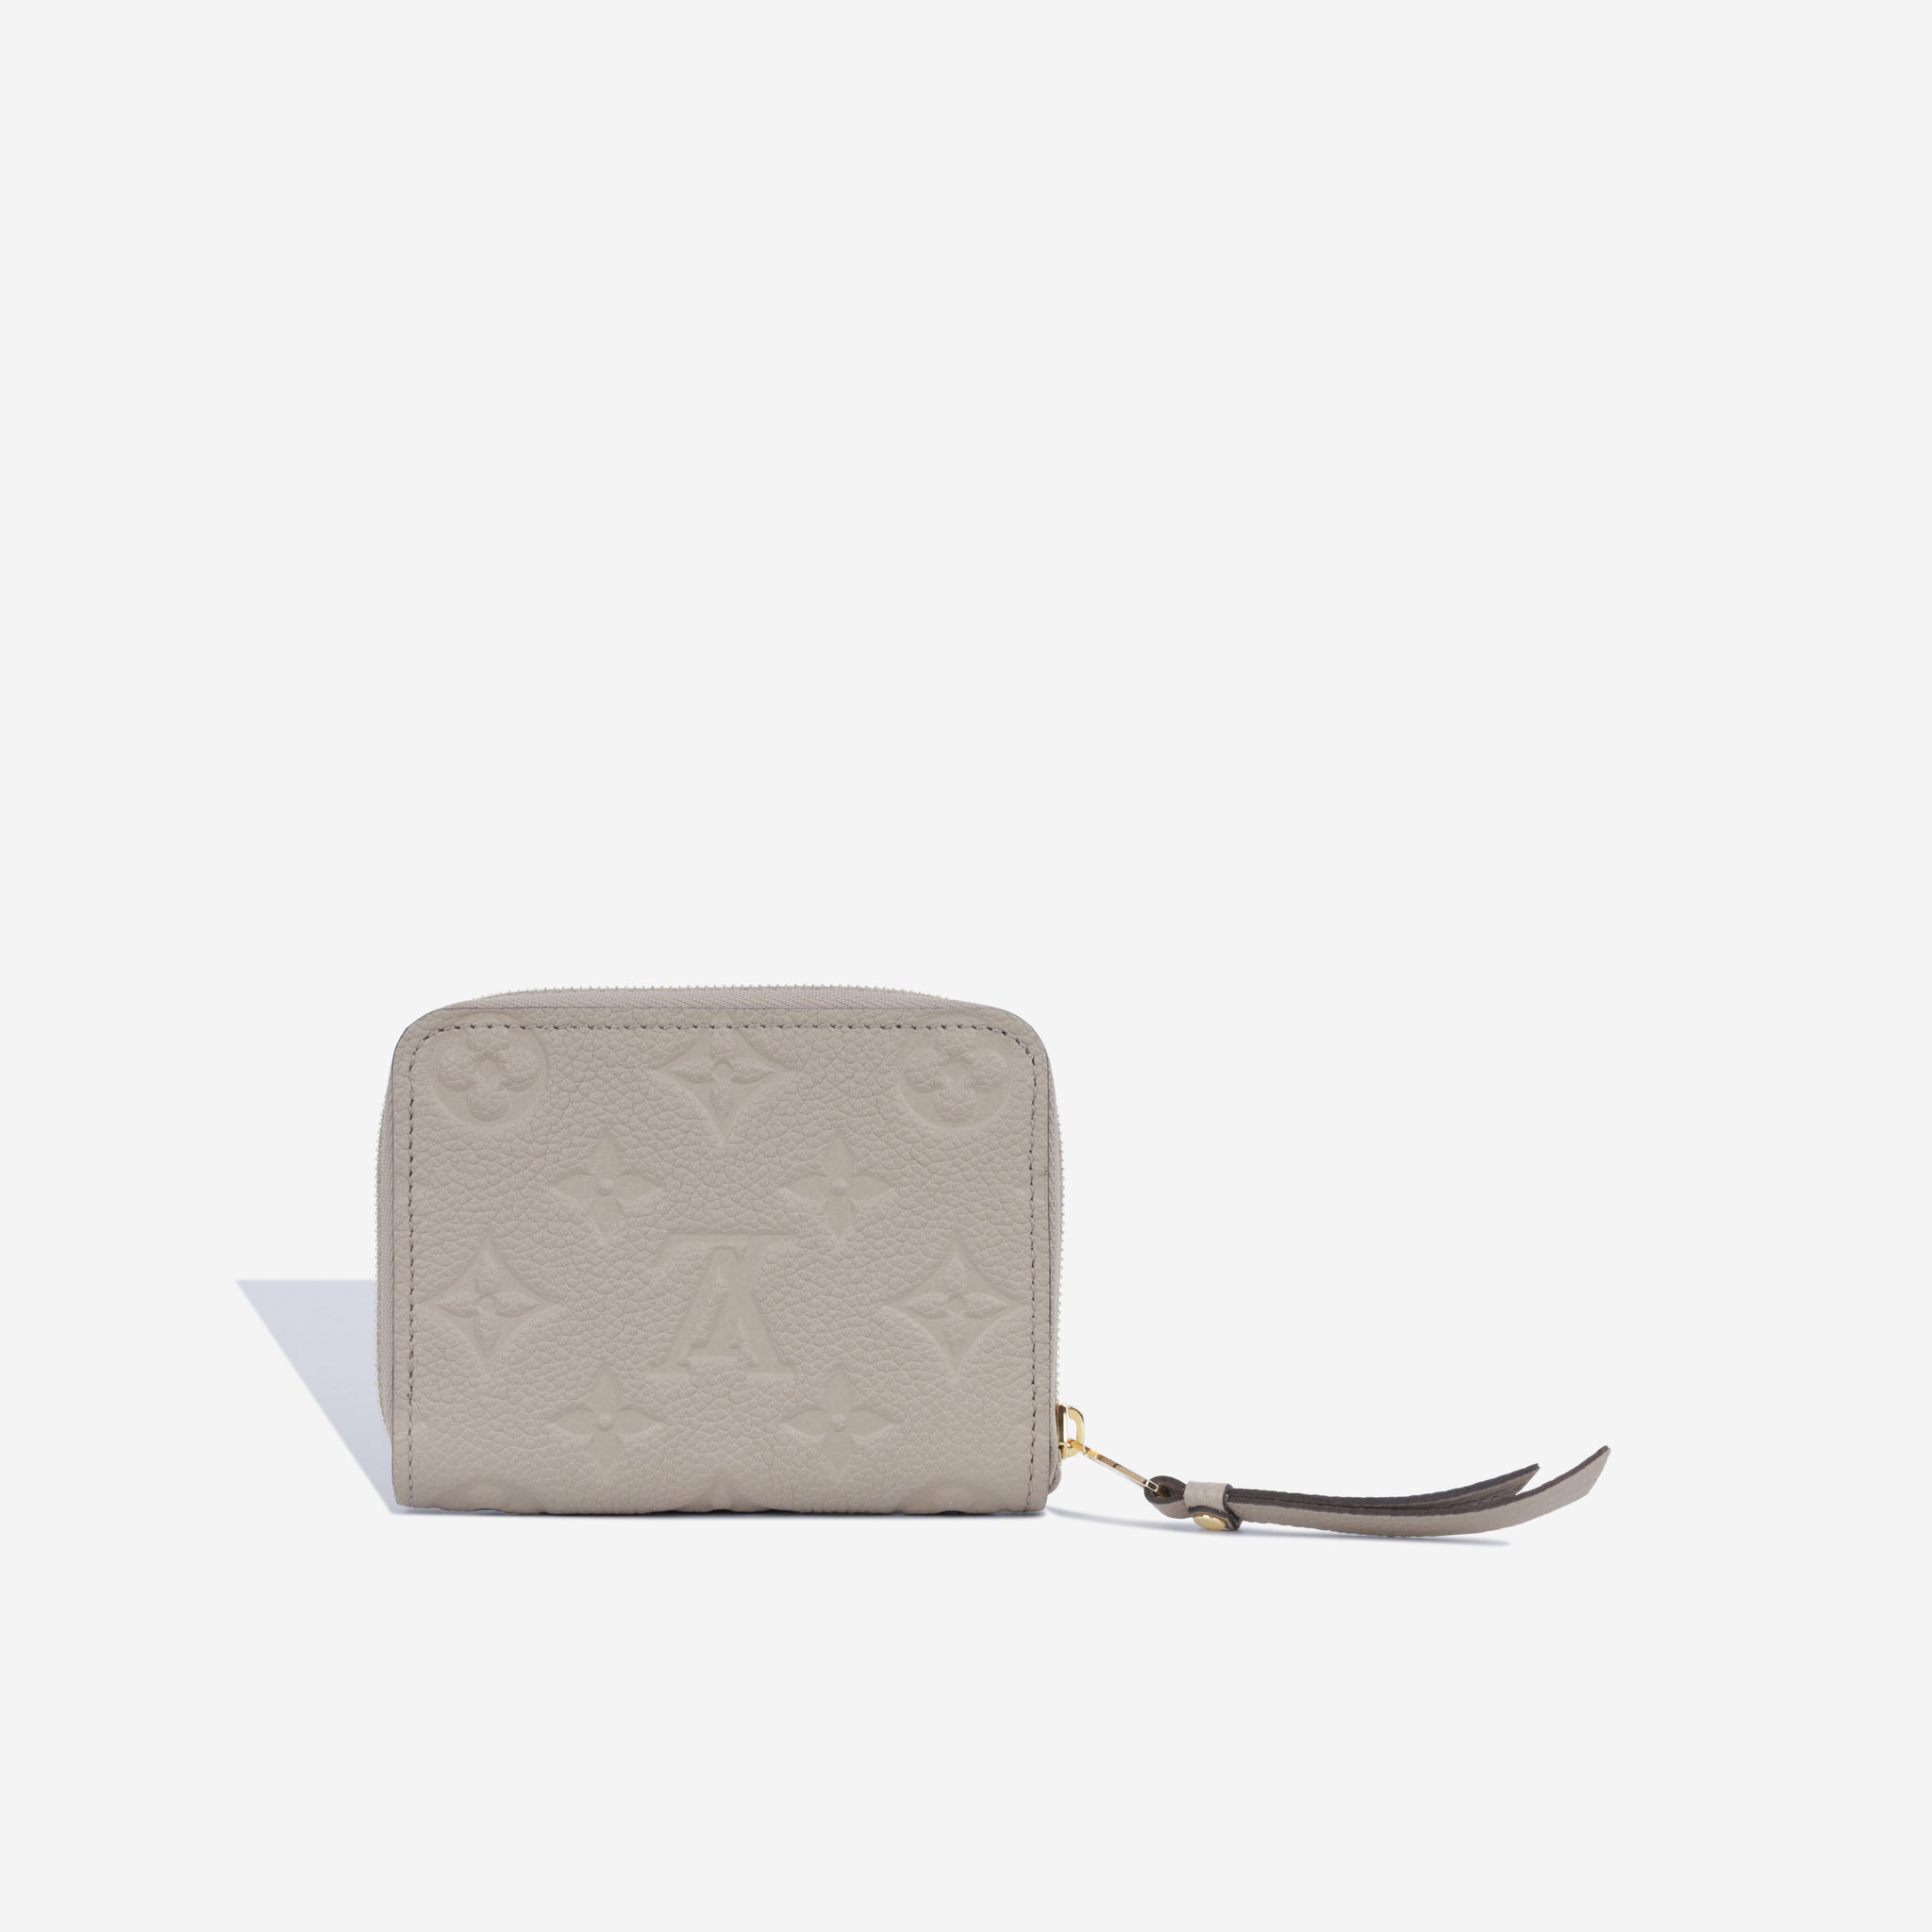 Louis Vuitton - Zippy Coin Purse - Monogram Empreinte - GHW - Pre